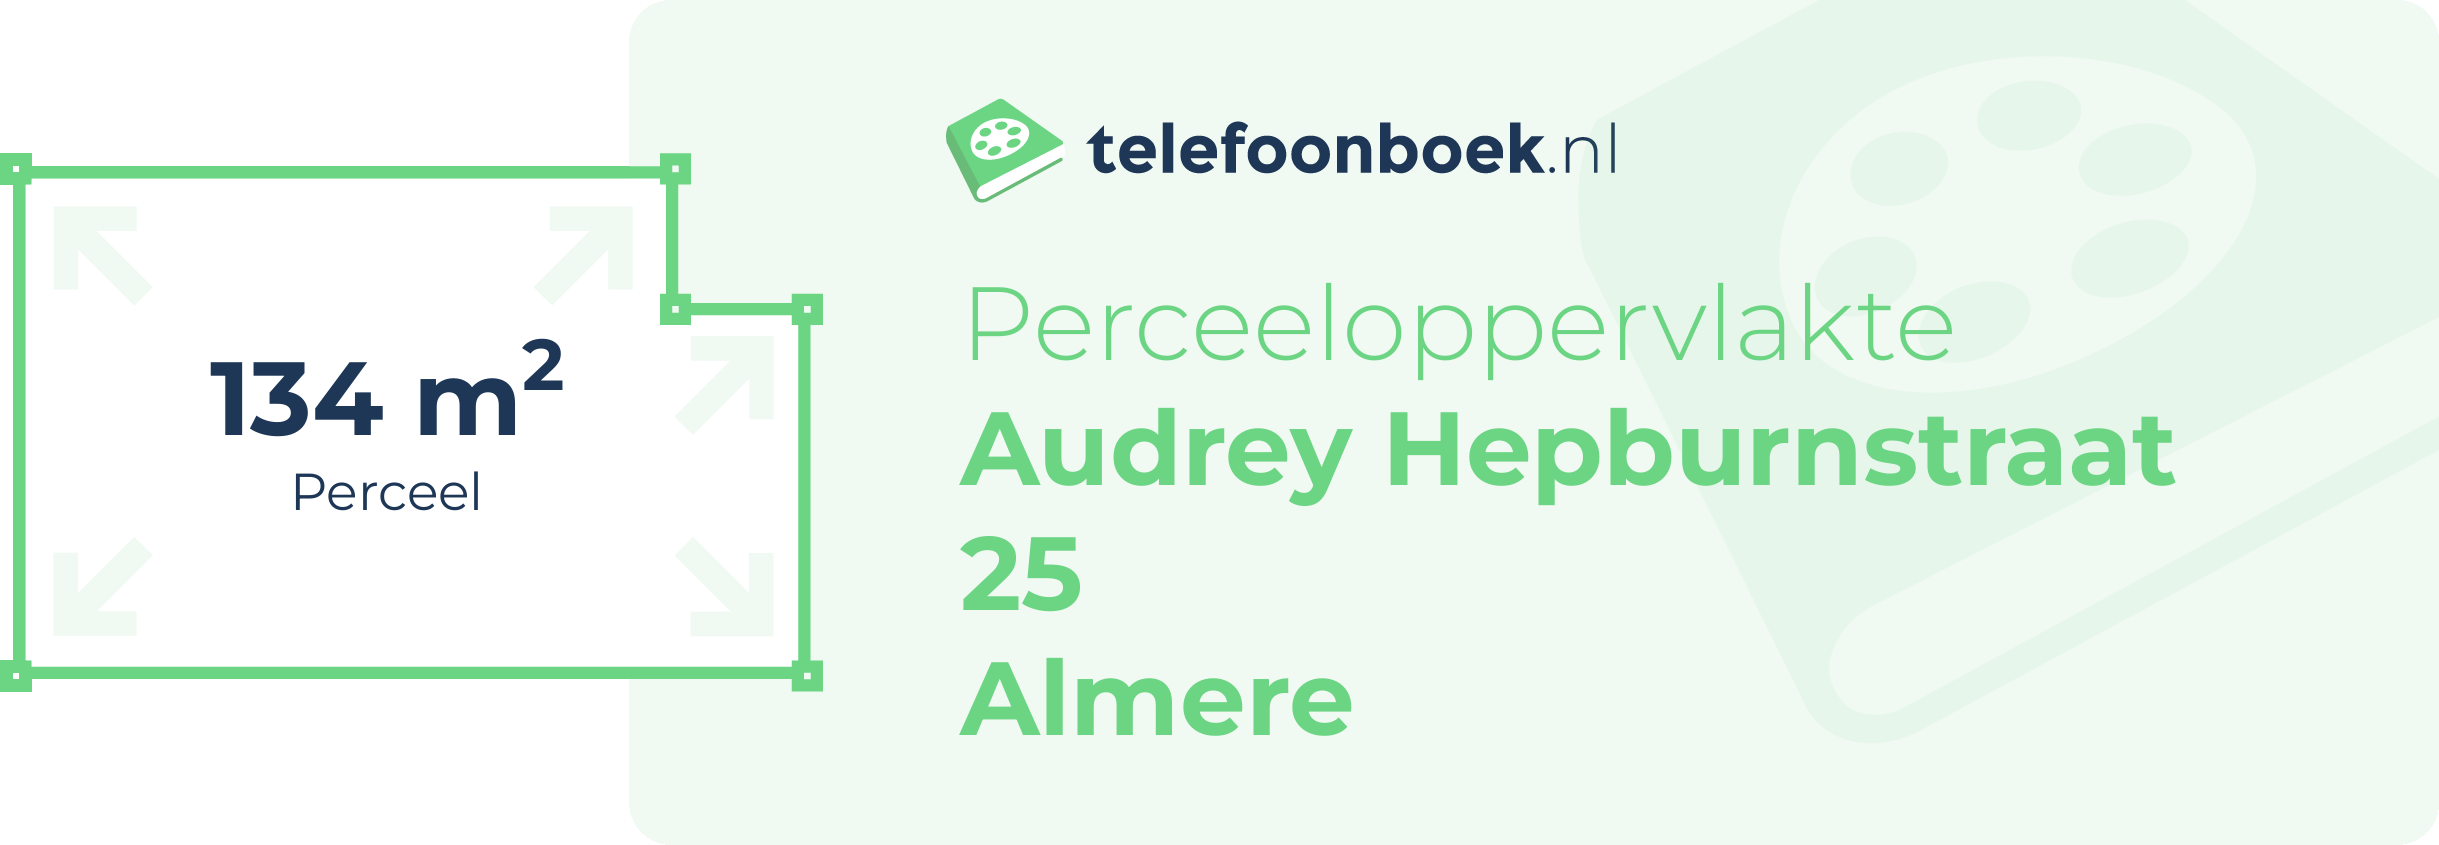 Perceeloppervlakte Audrey Hepburnstraat 25 Almere